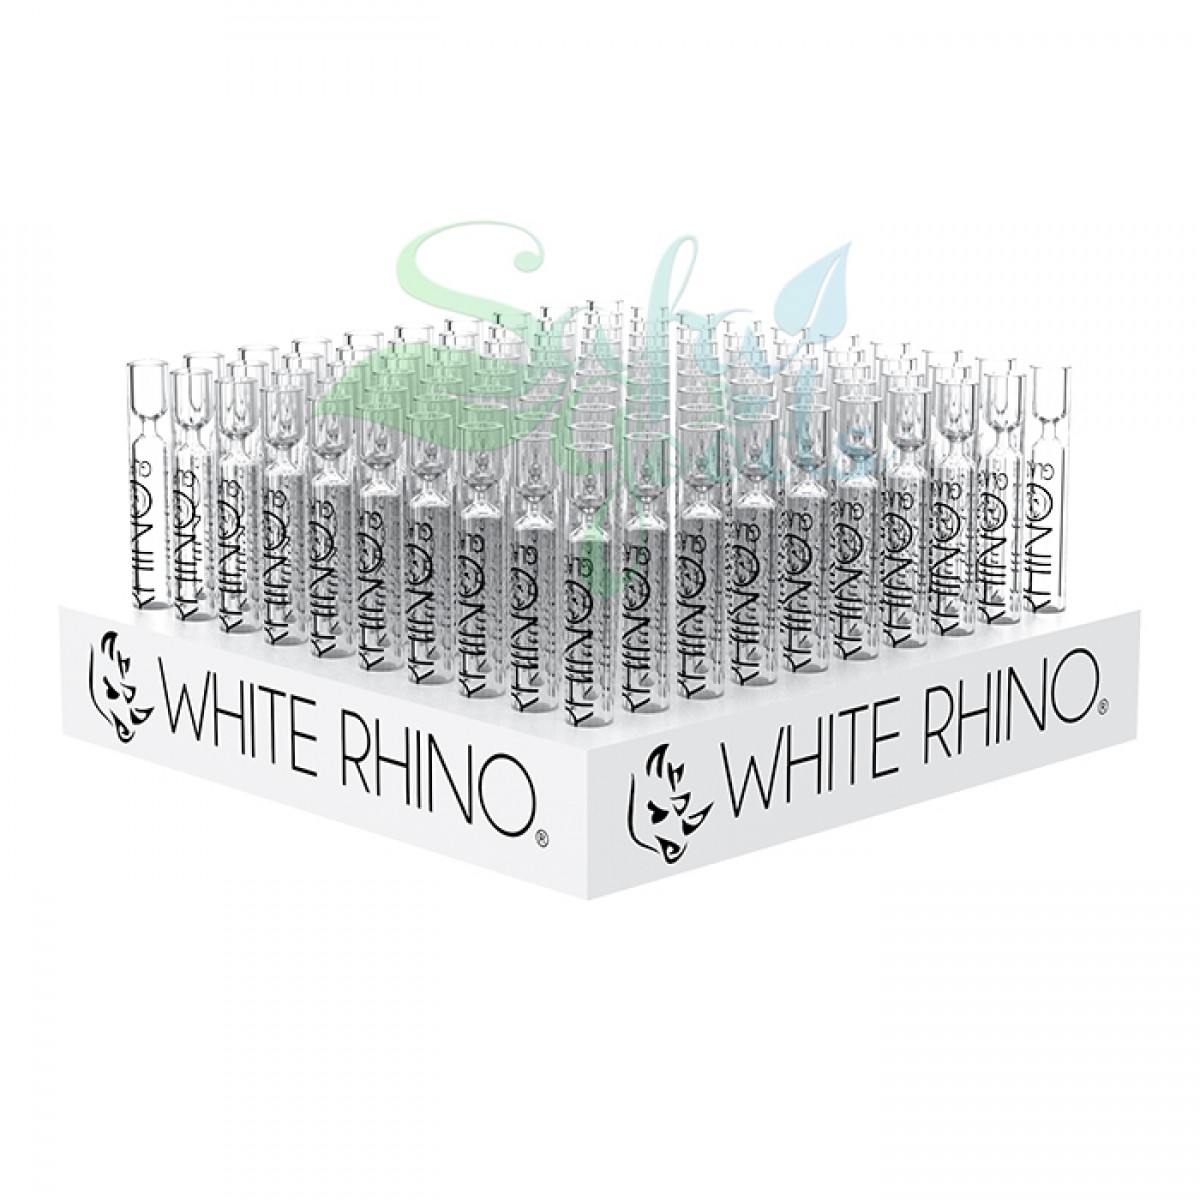 White Rhino Glass Chillums 100ct